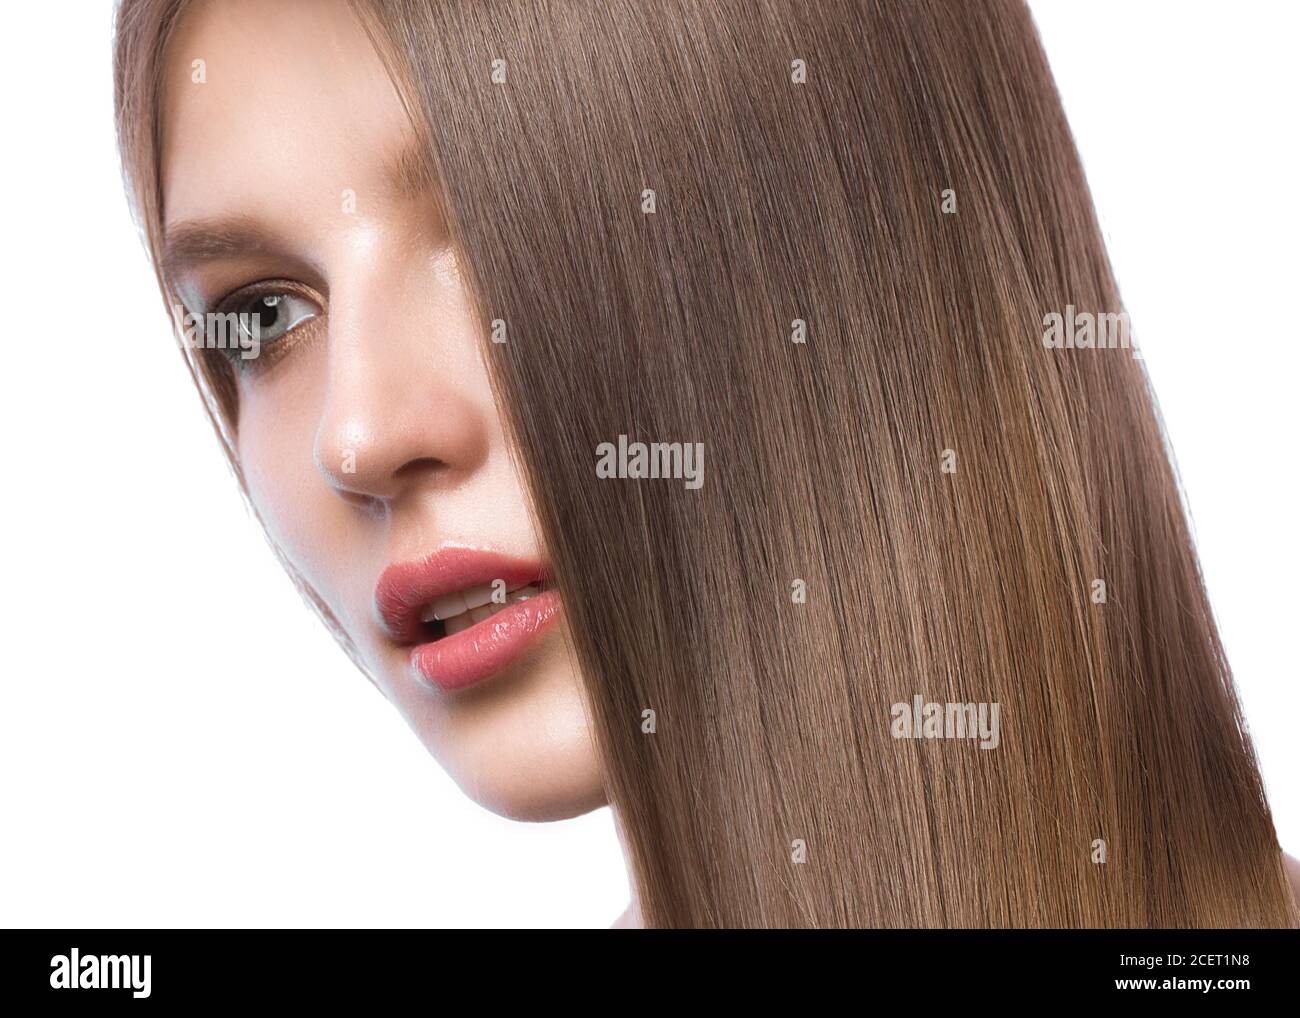 Schöne braunhaarige Mädchen in Bewegung mit einem perfekt glatte Haare, und klassische Make-up. Stockfoto